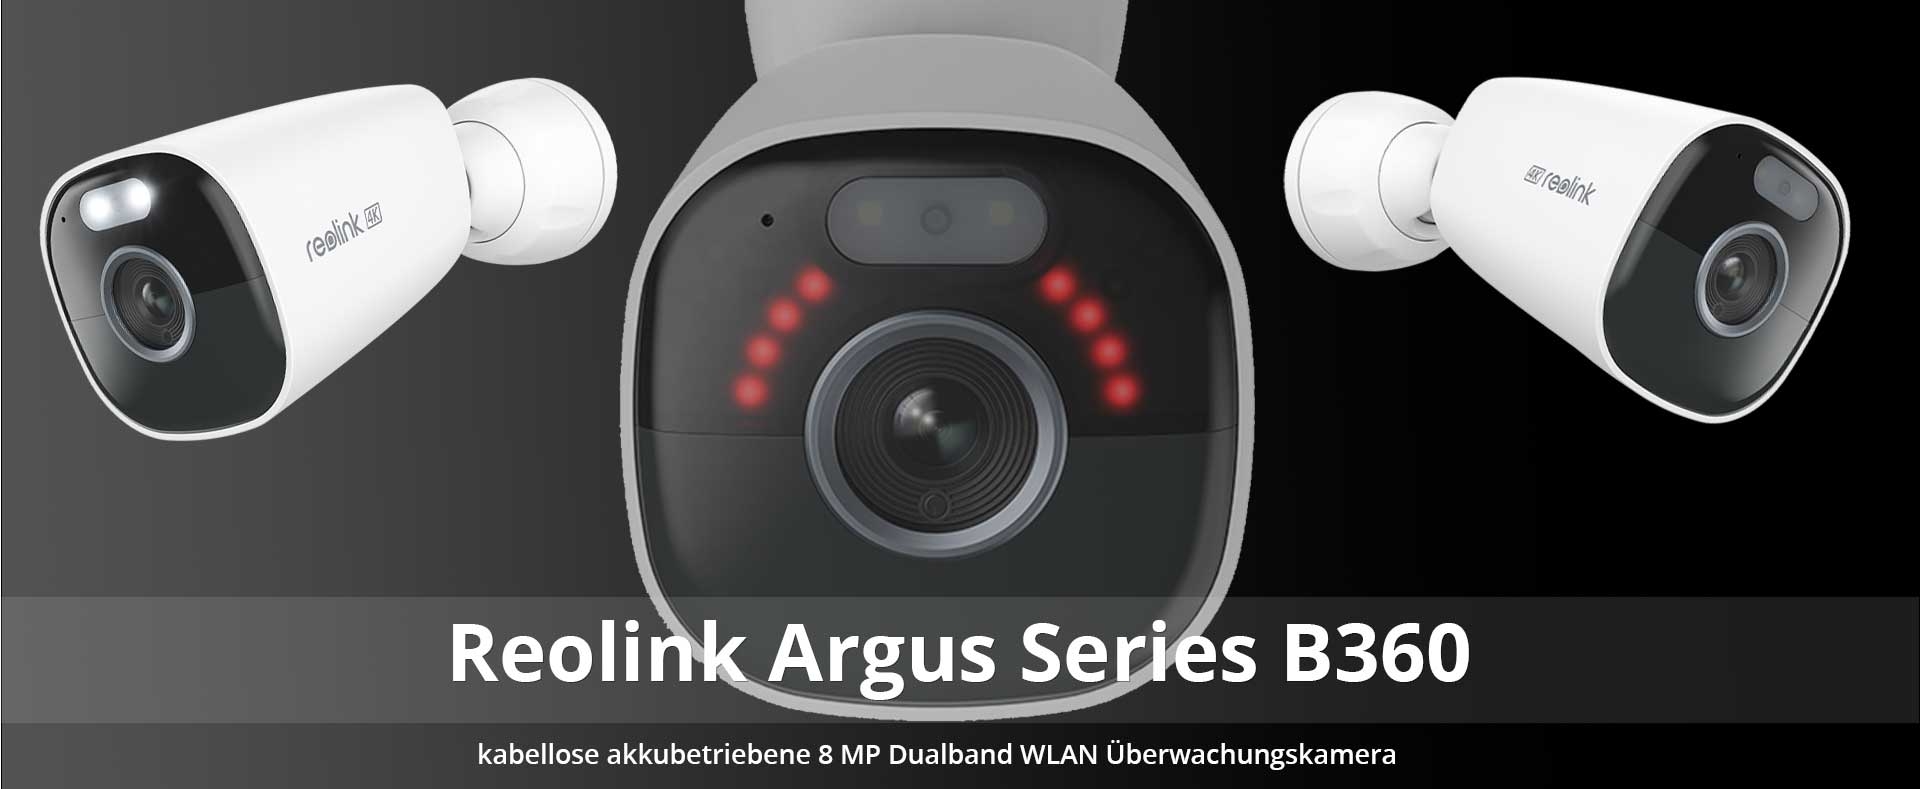 Reolink Argus Series B360 kabellose akkubetriebene 8 MP Dualband WLAN Überwachungskamera